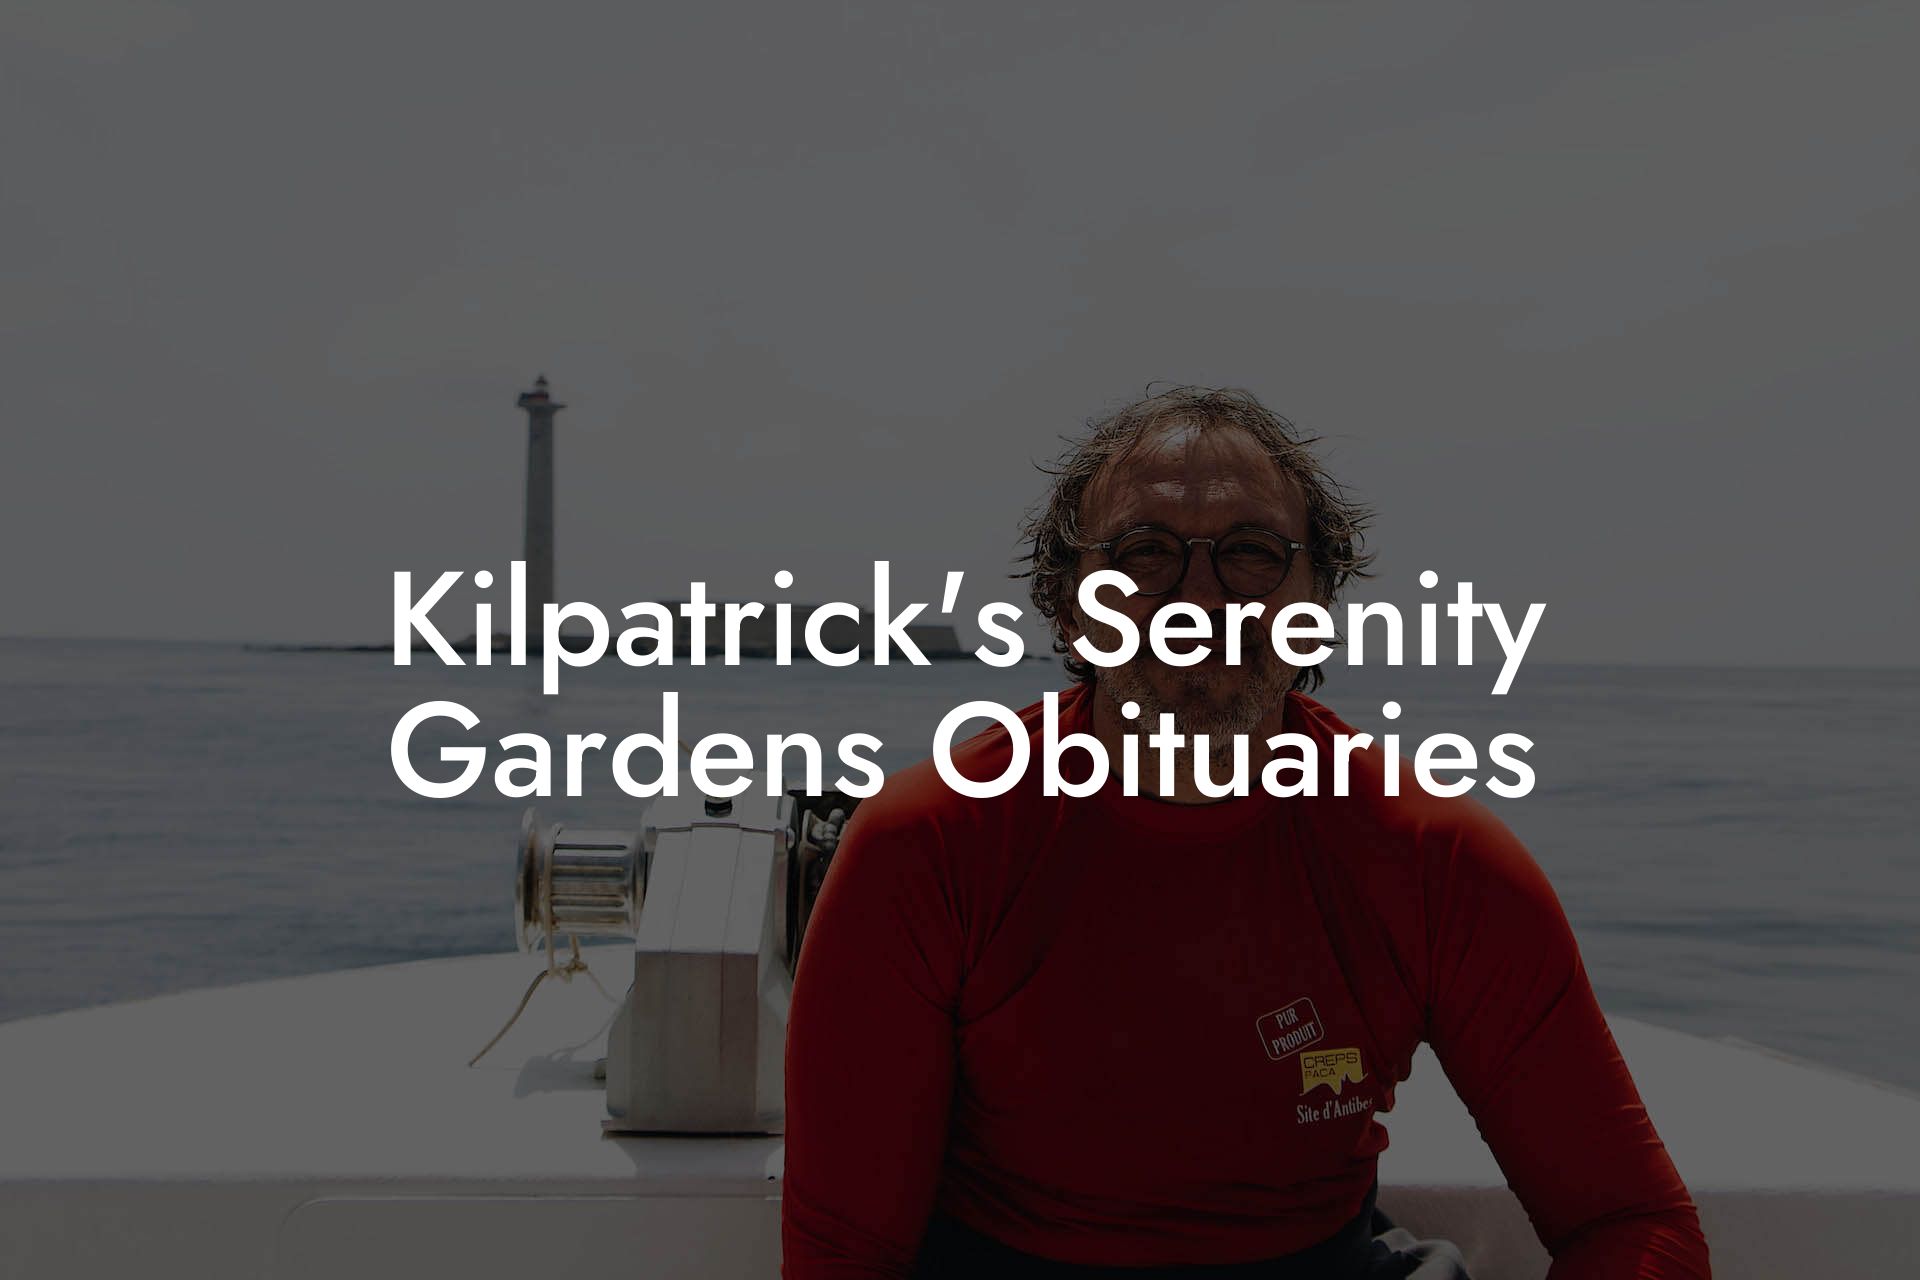 Kilpatrick's Serenity Gardens Obituaries